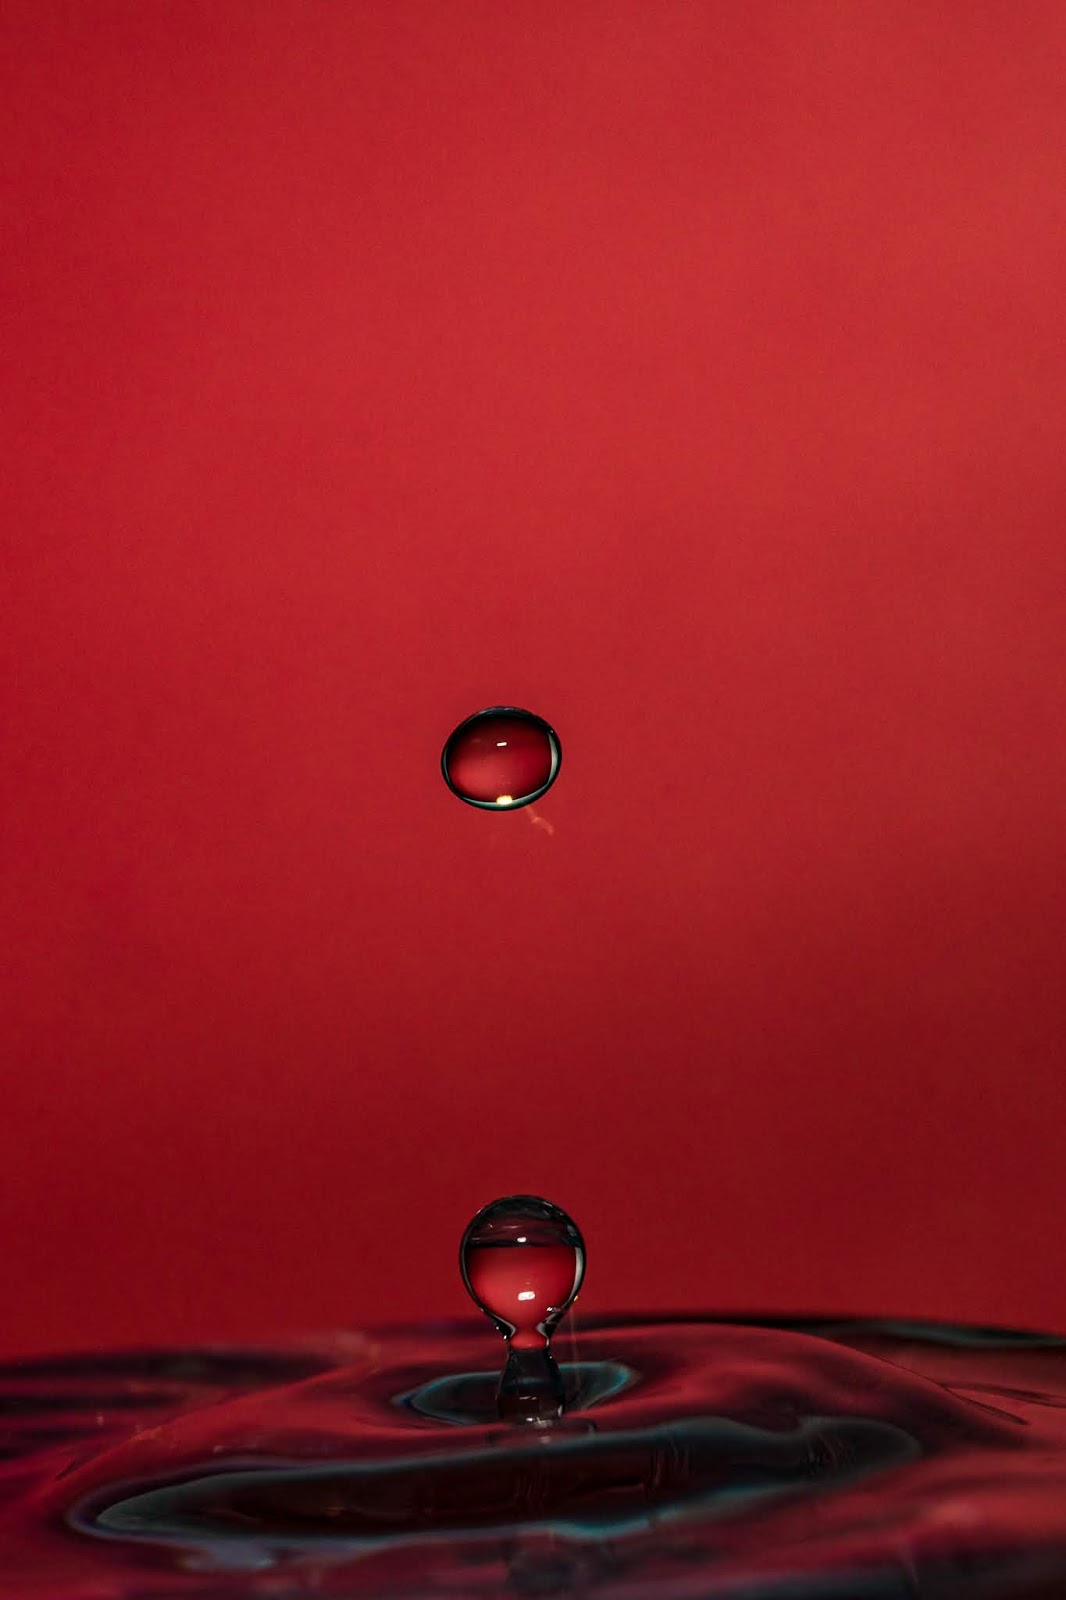 carta da parati gratis,far cadere,acqua,rosso,fotografia di still life,liquido